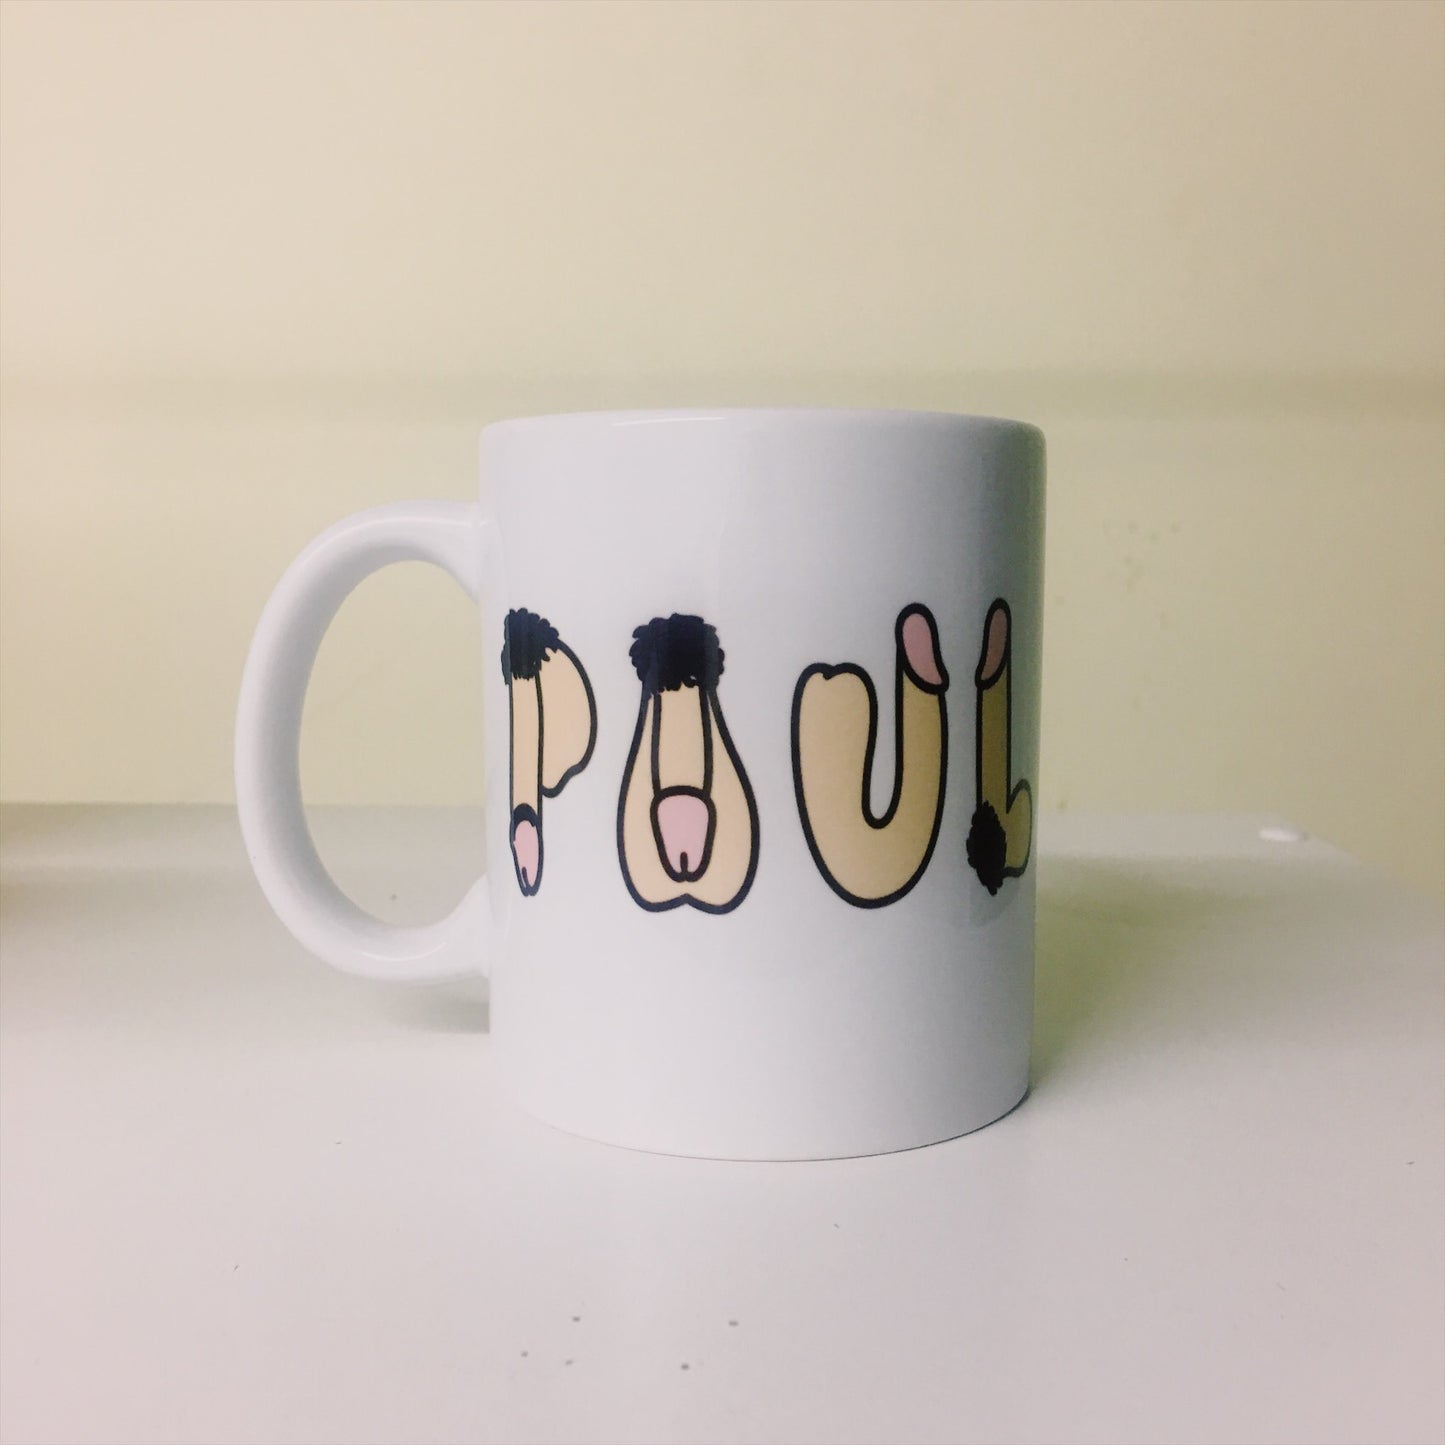 Peeeeen is Name - Custom Mug